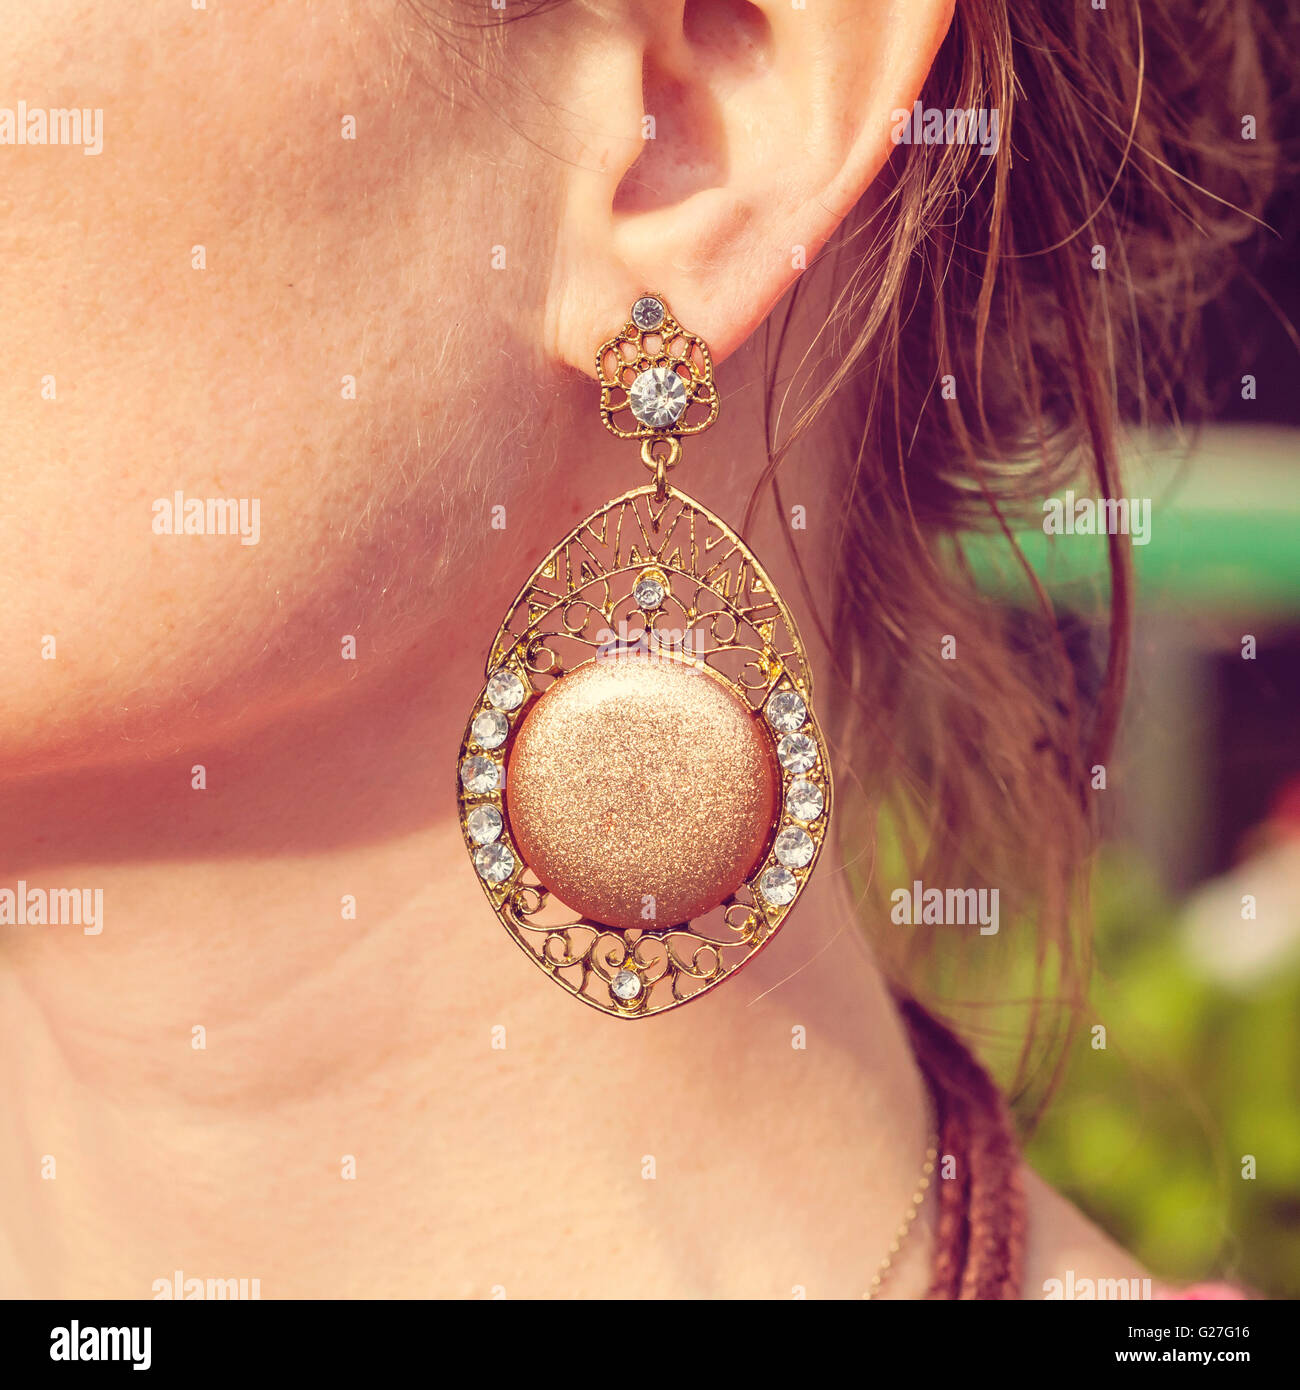 Beautiful earring in boho style on female ear Stock Photo